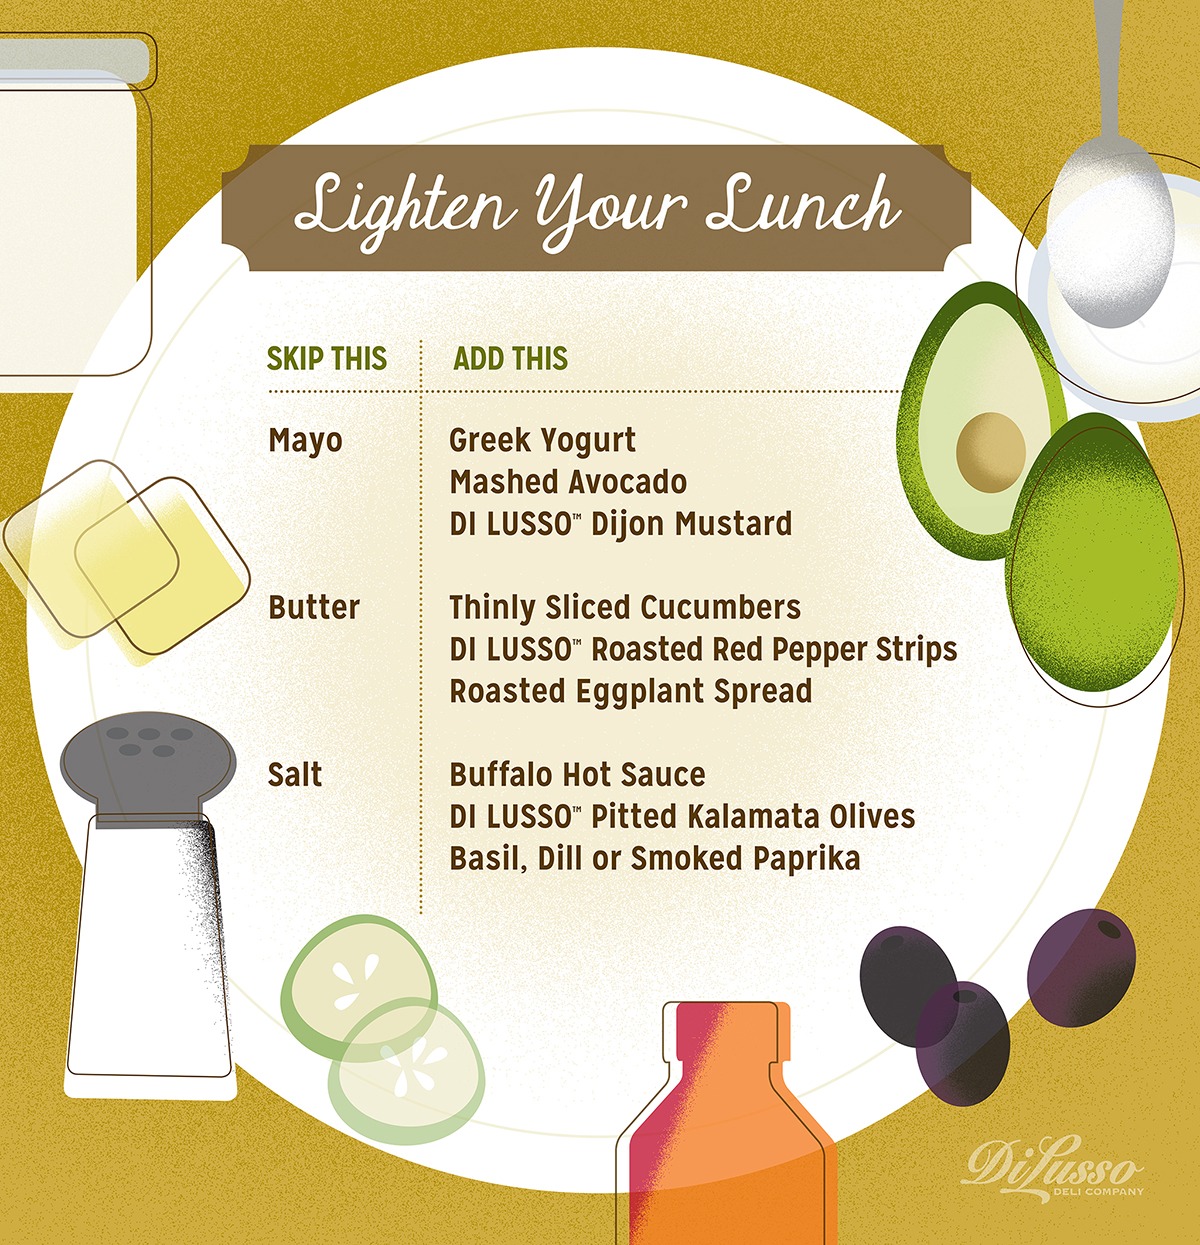 Lighten Your Lunch